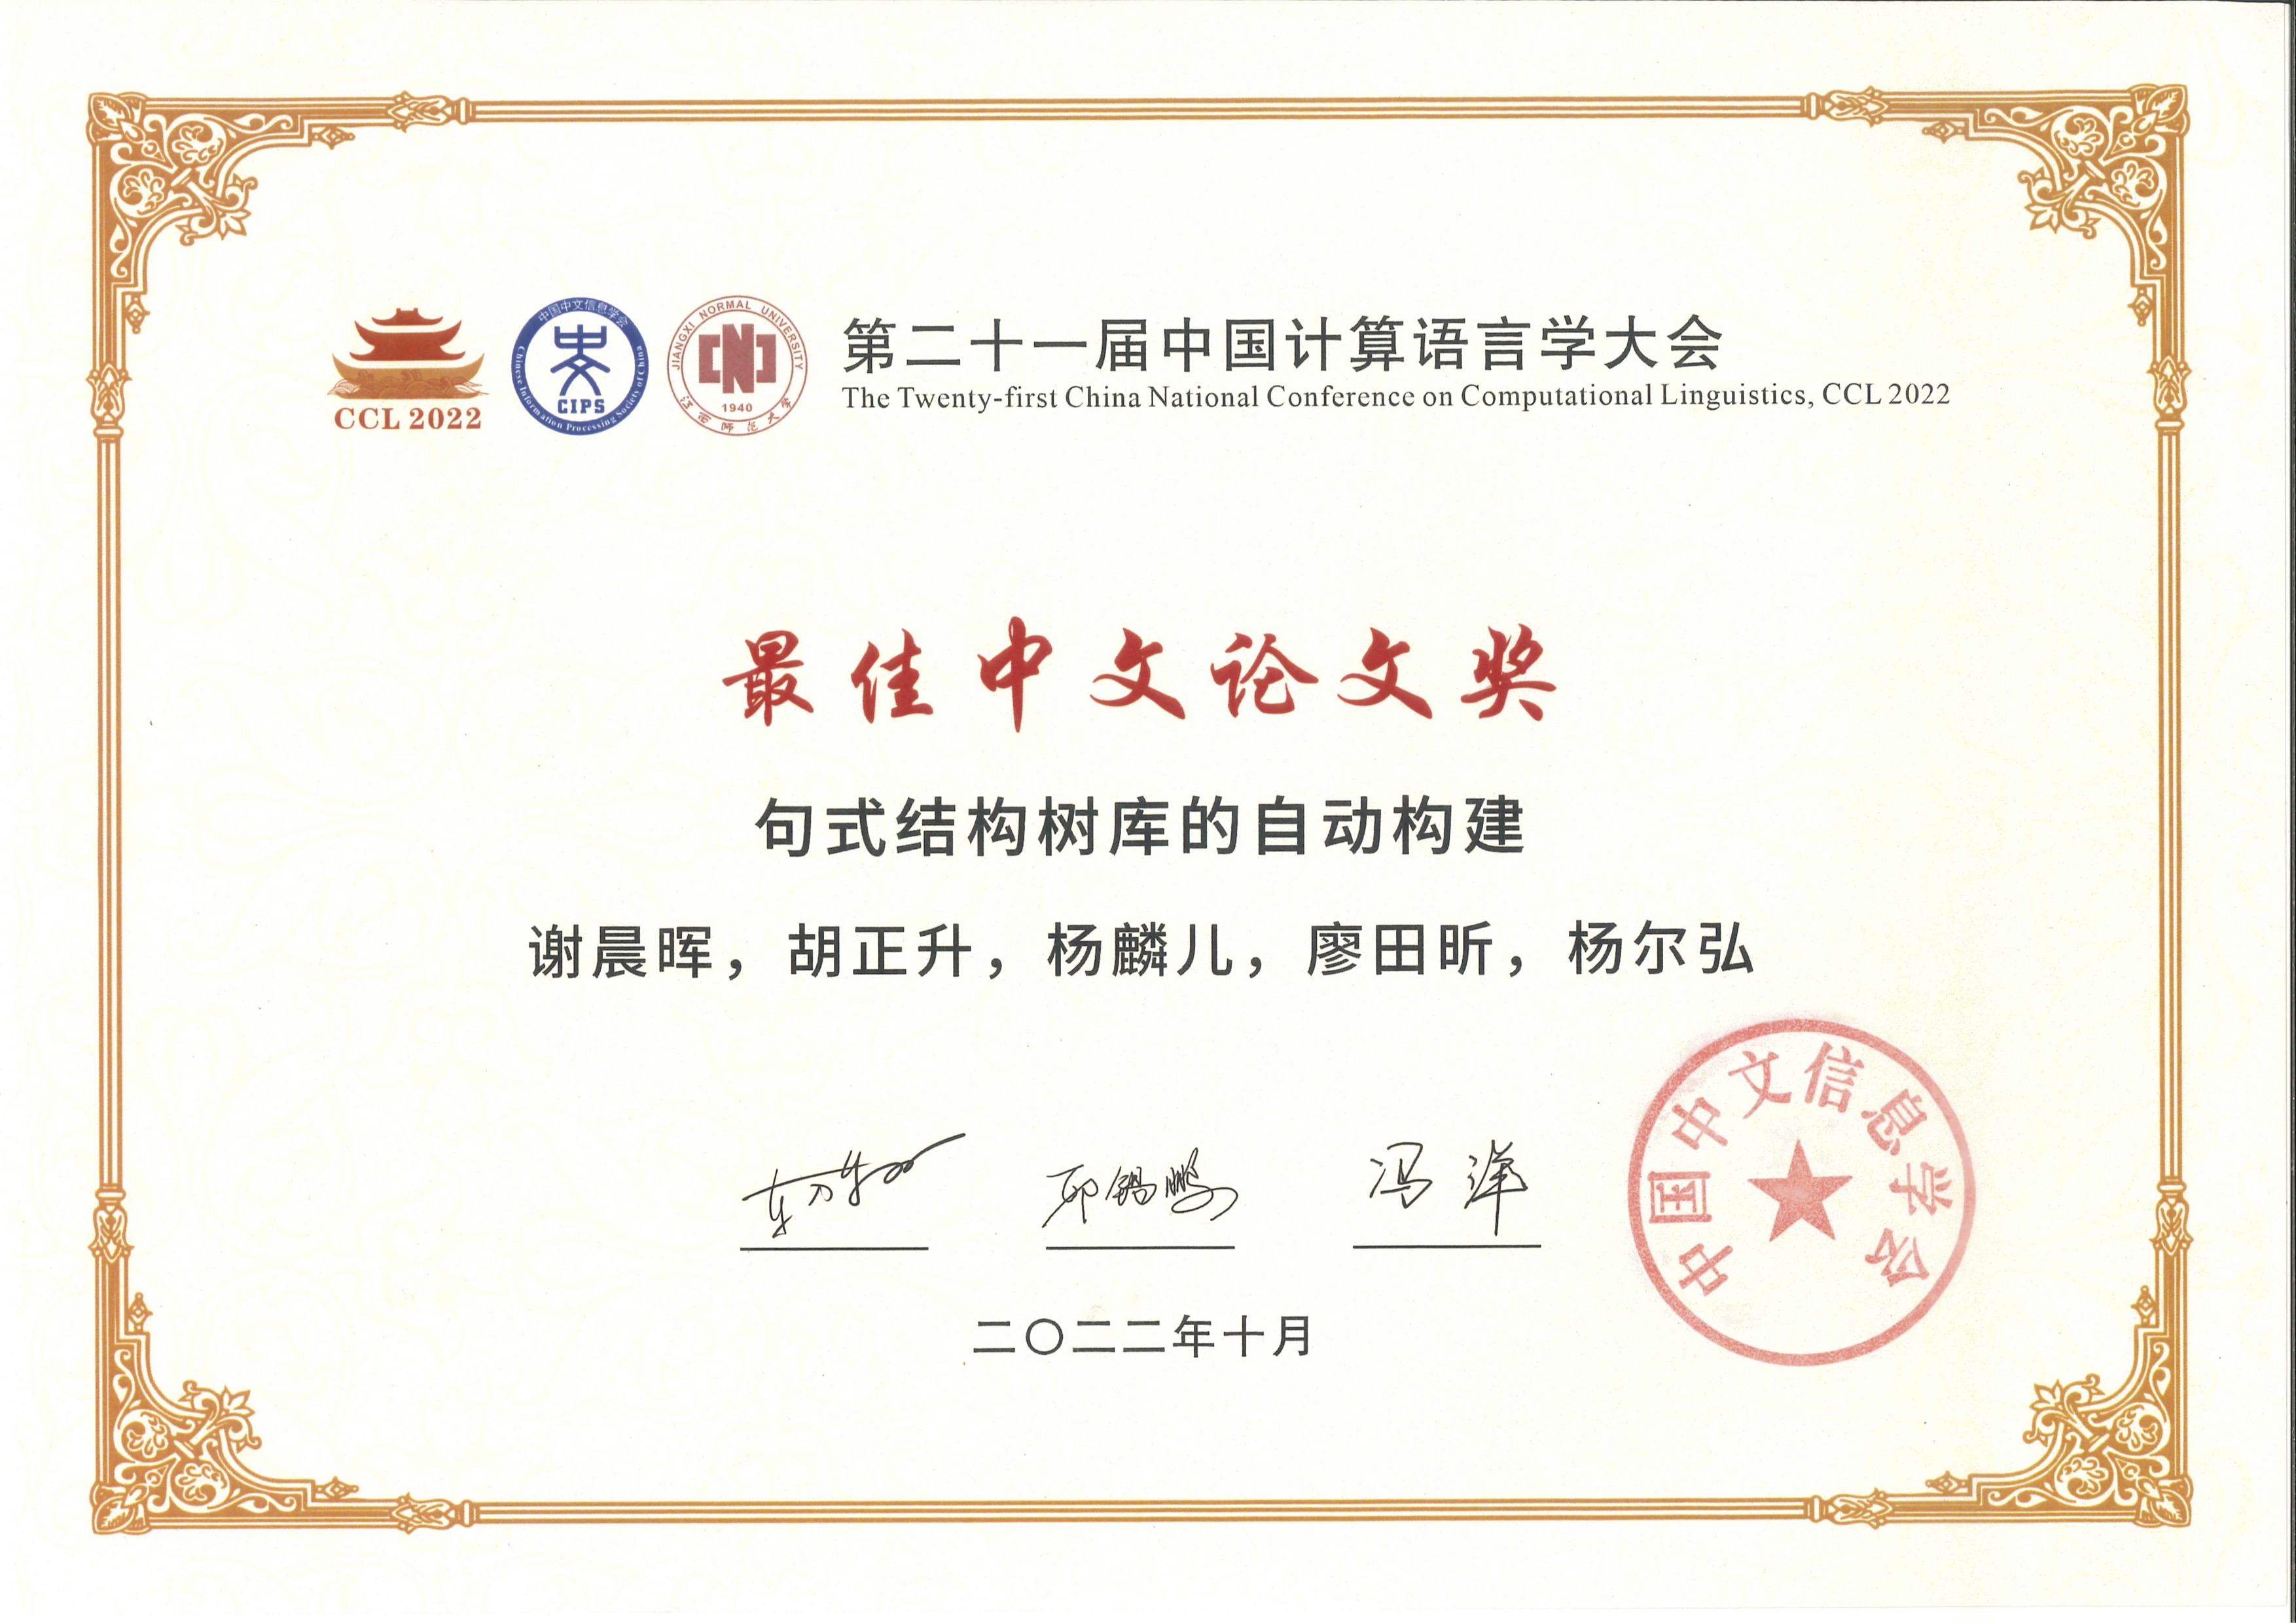 新闻 \| 我组论文获得 CCL 2022 最佳中文论文奖